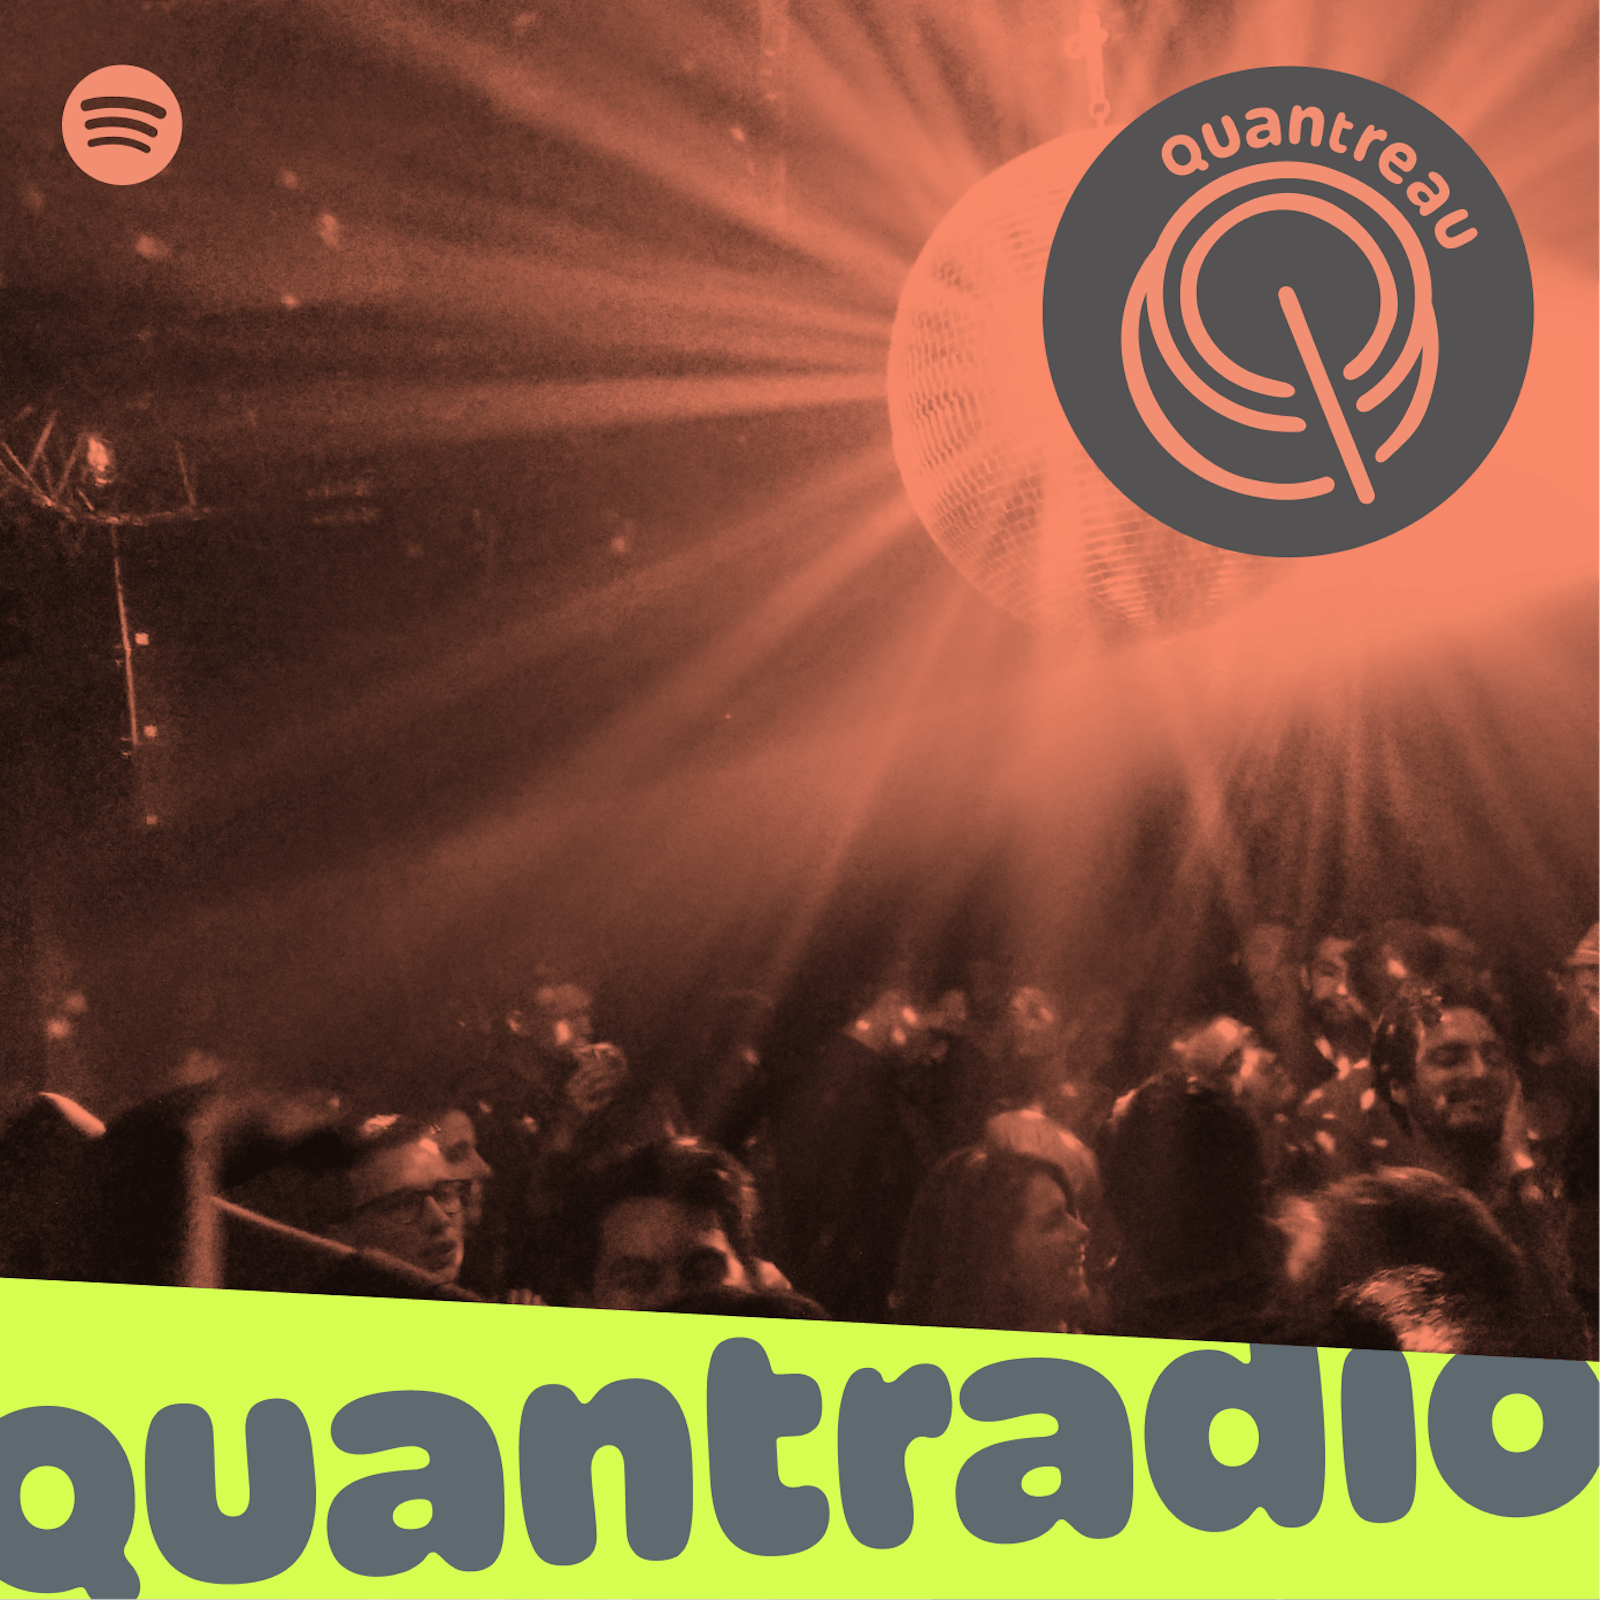 quantradio - spotify playlist